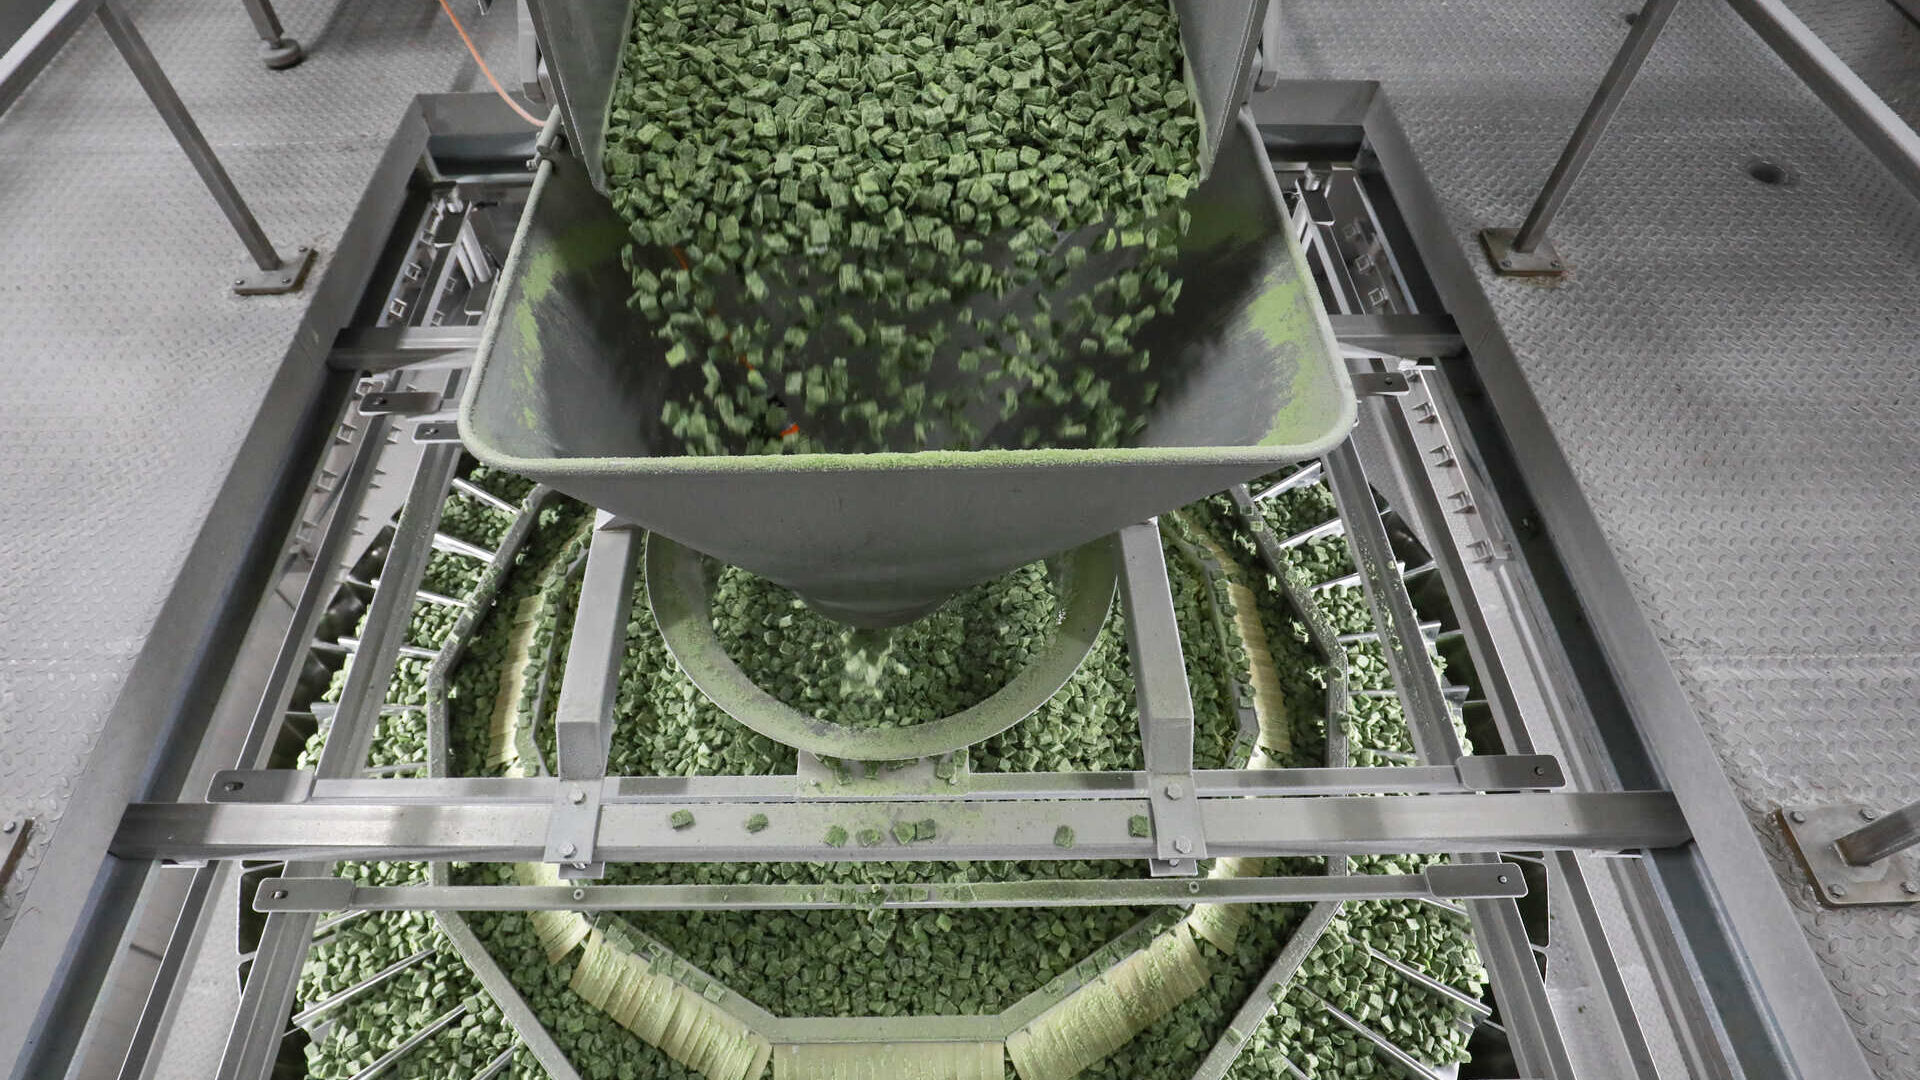 Surgelazione: spinaci della iglo in fabbrica